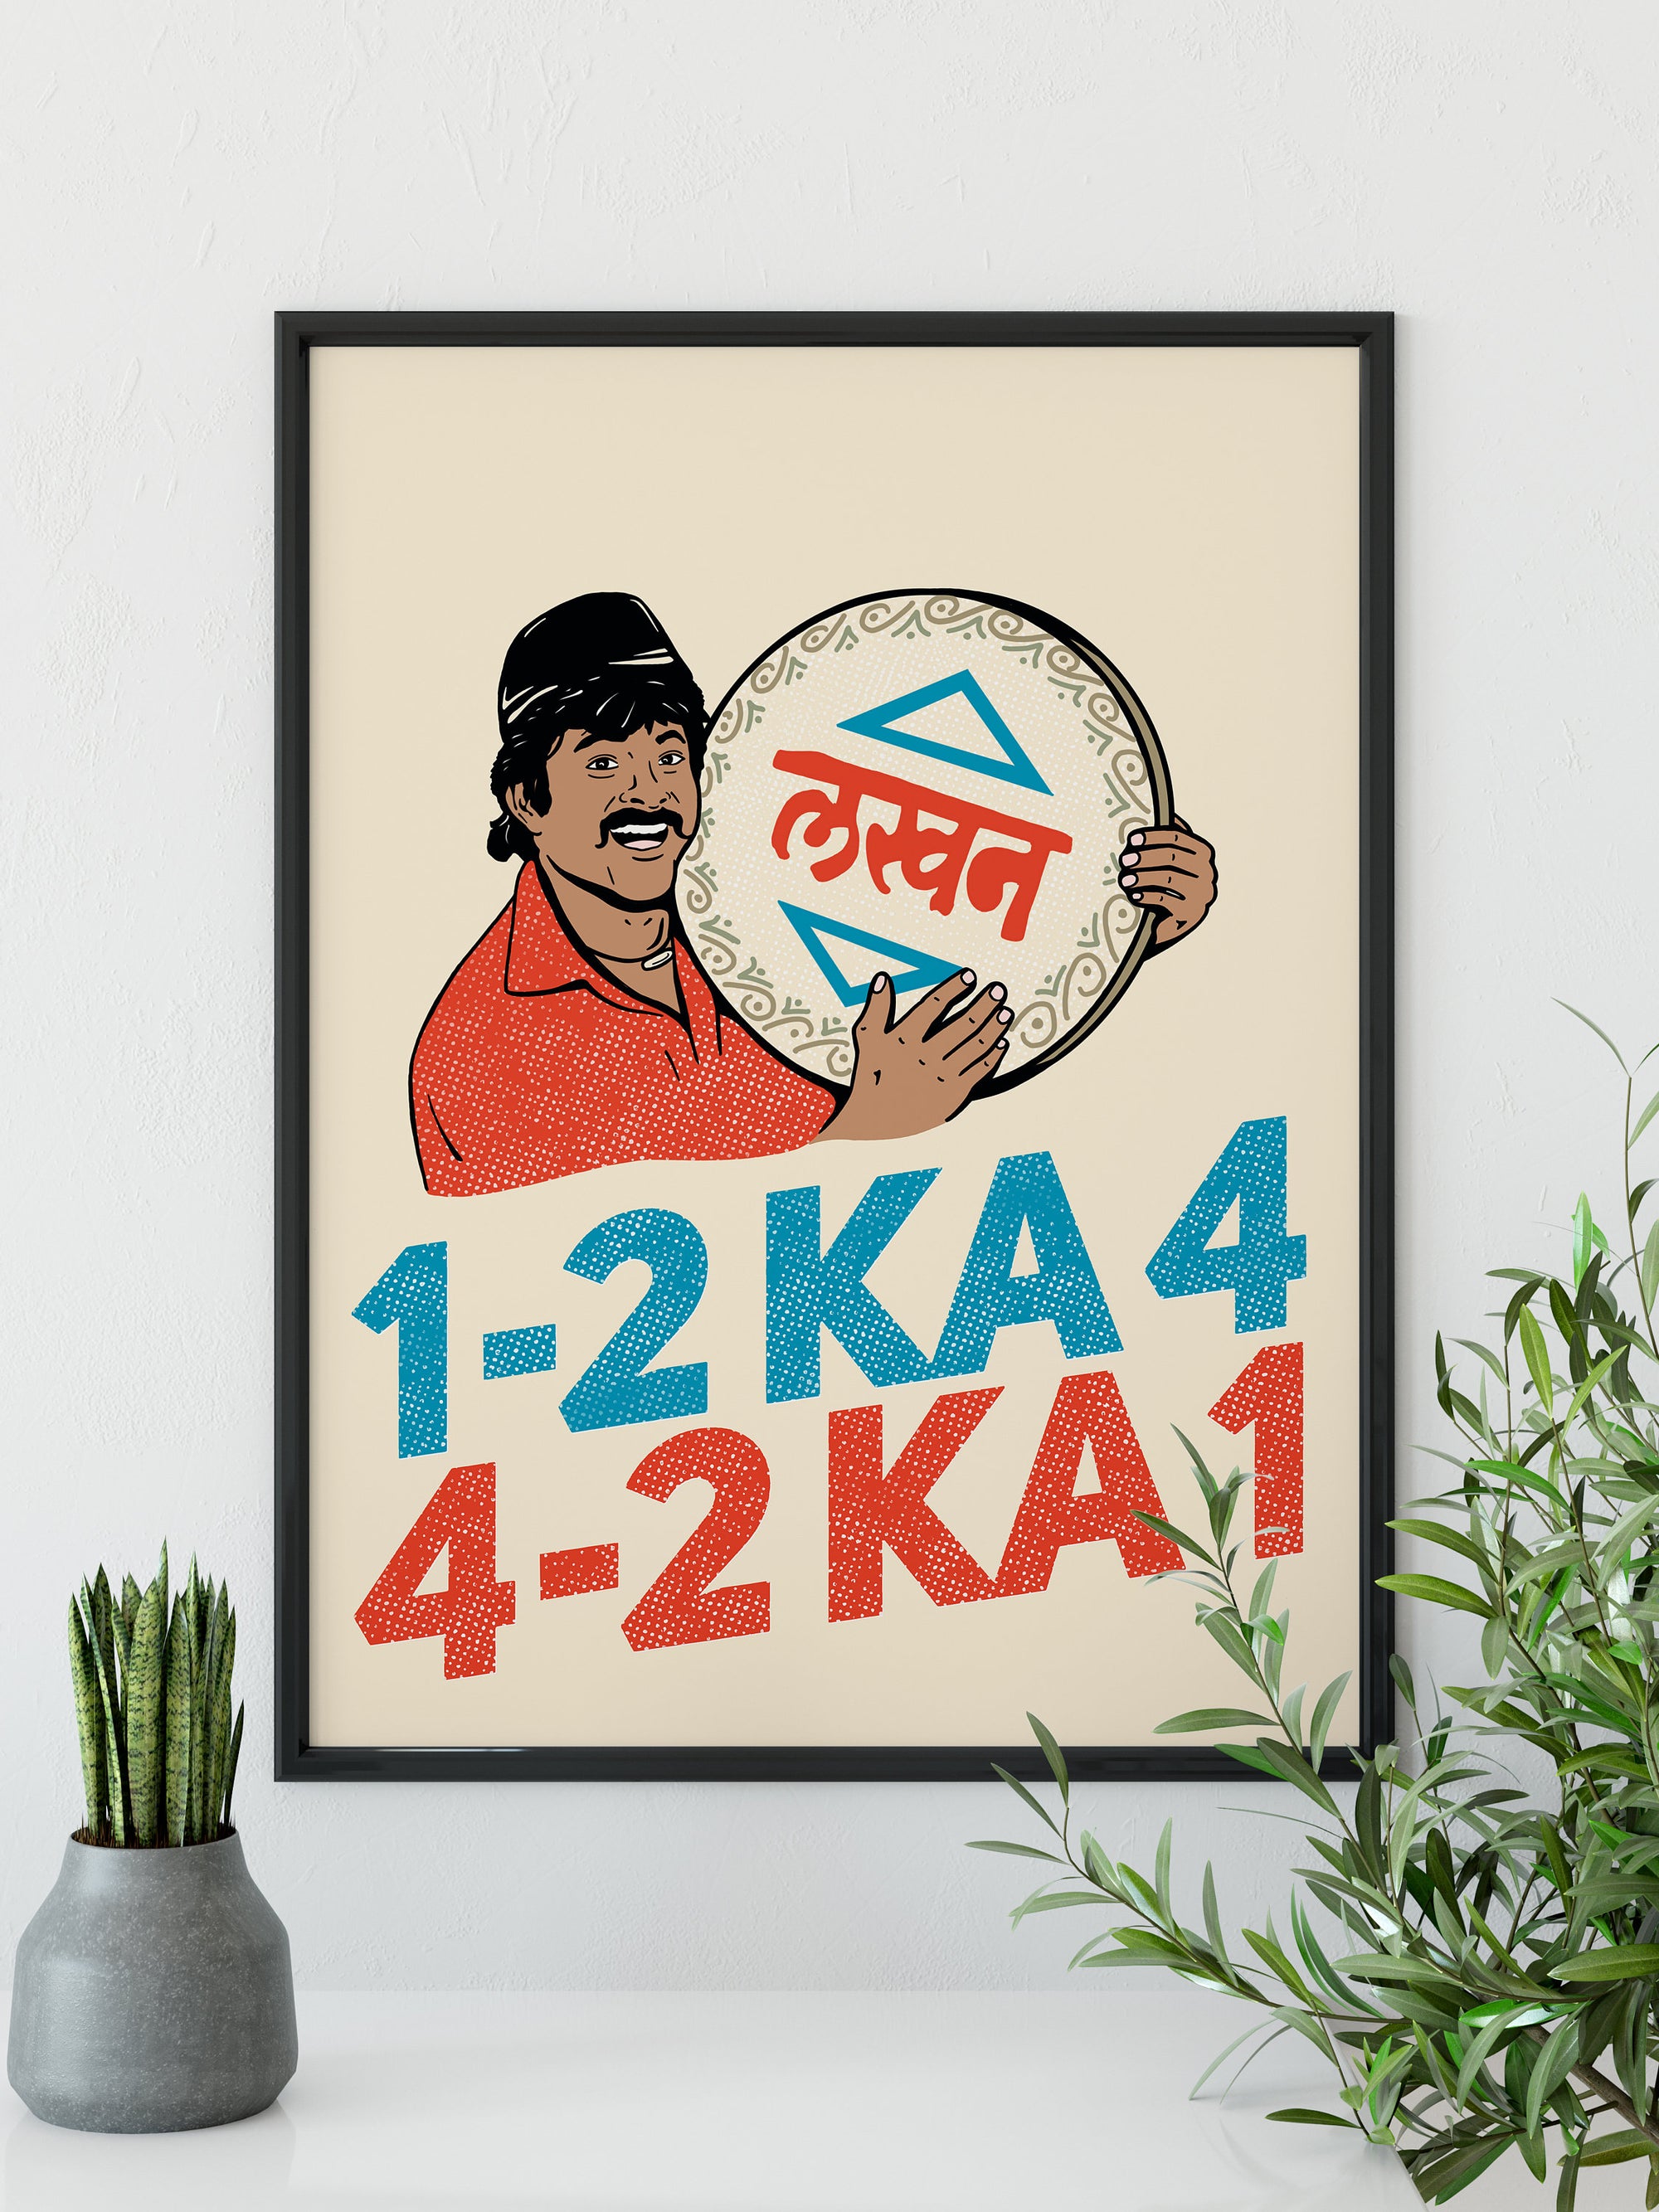 1 2 KA 4 - Bollywood